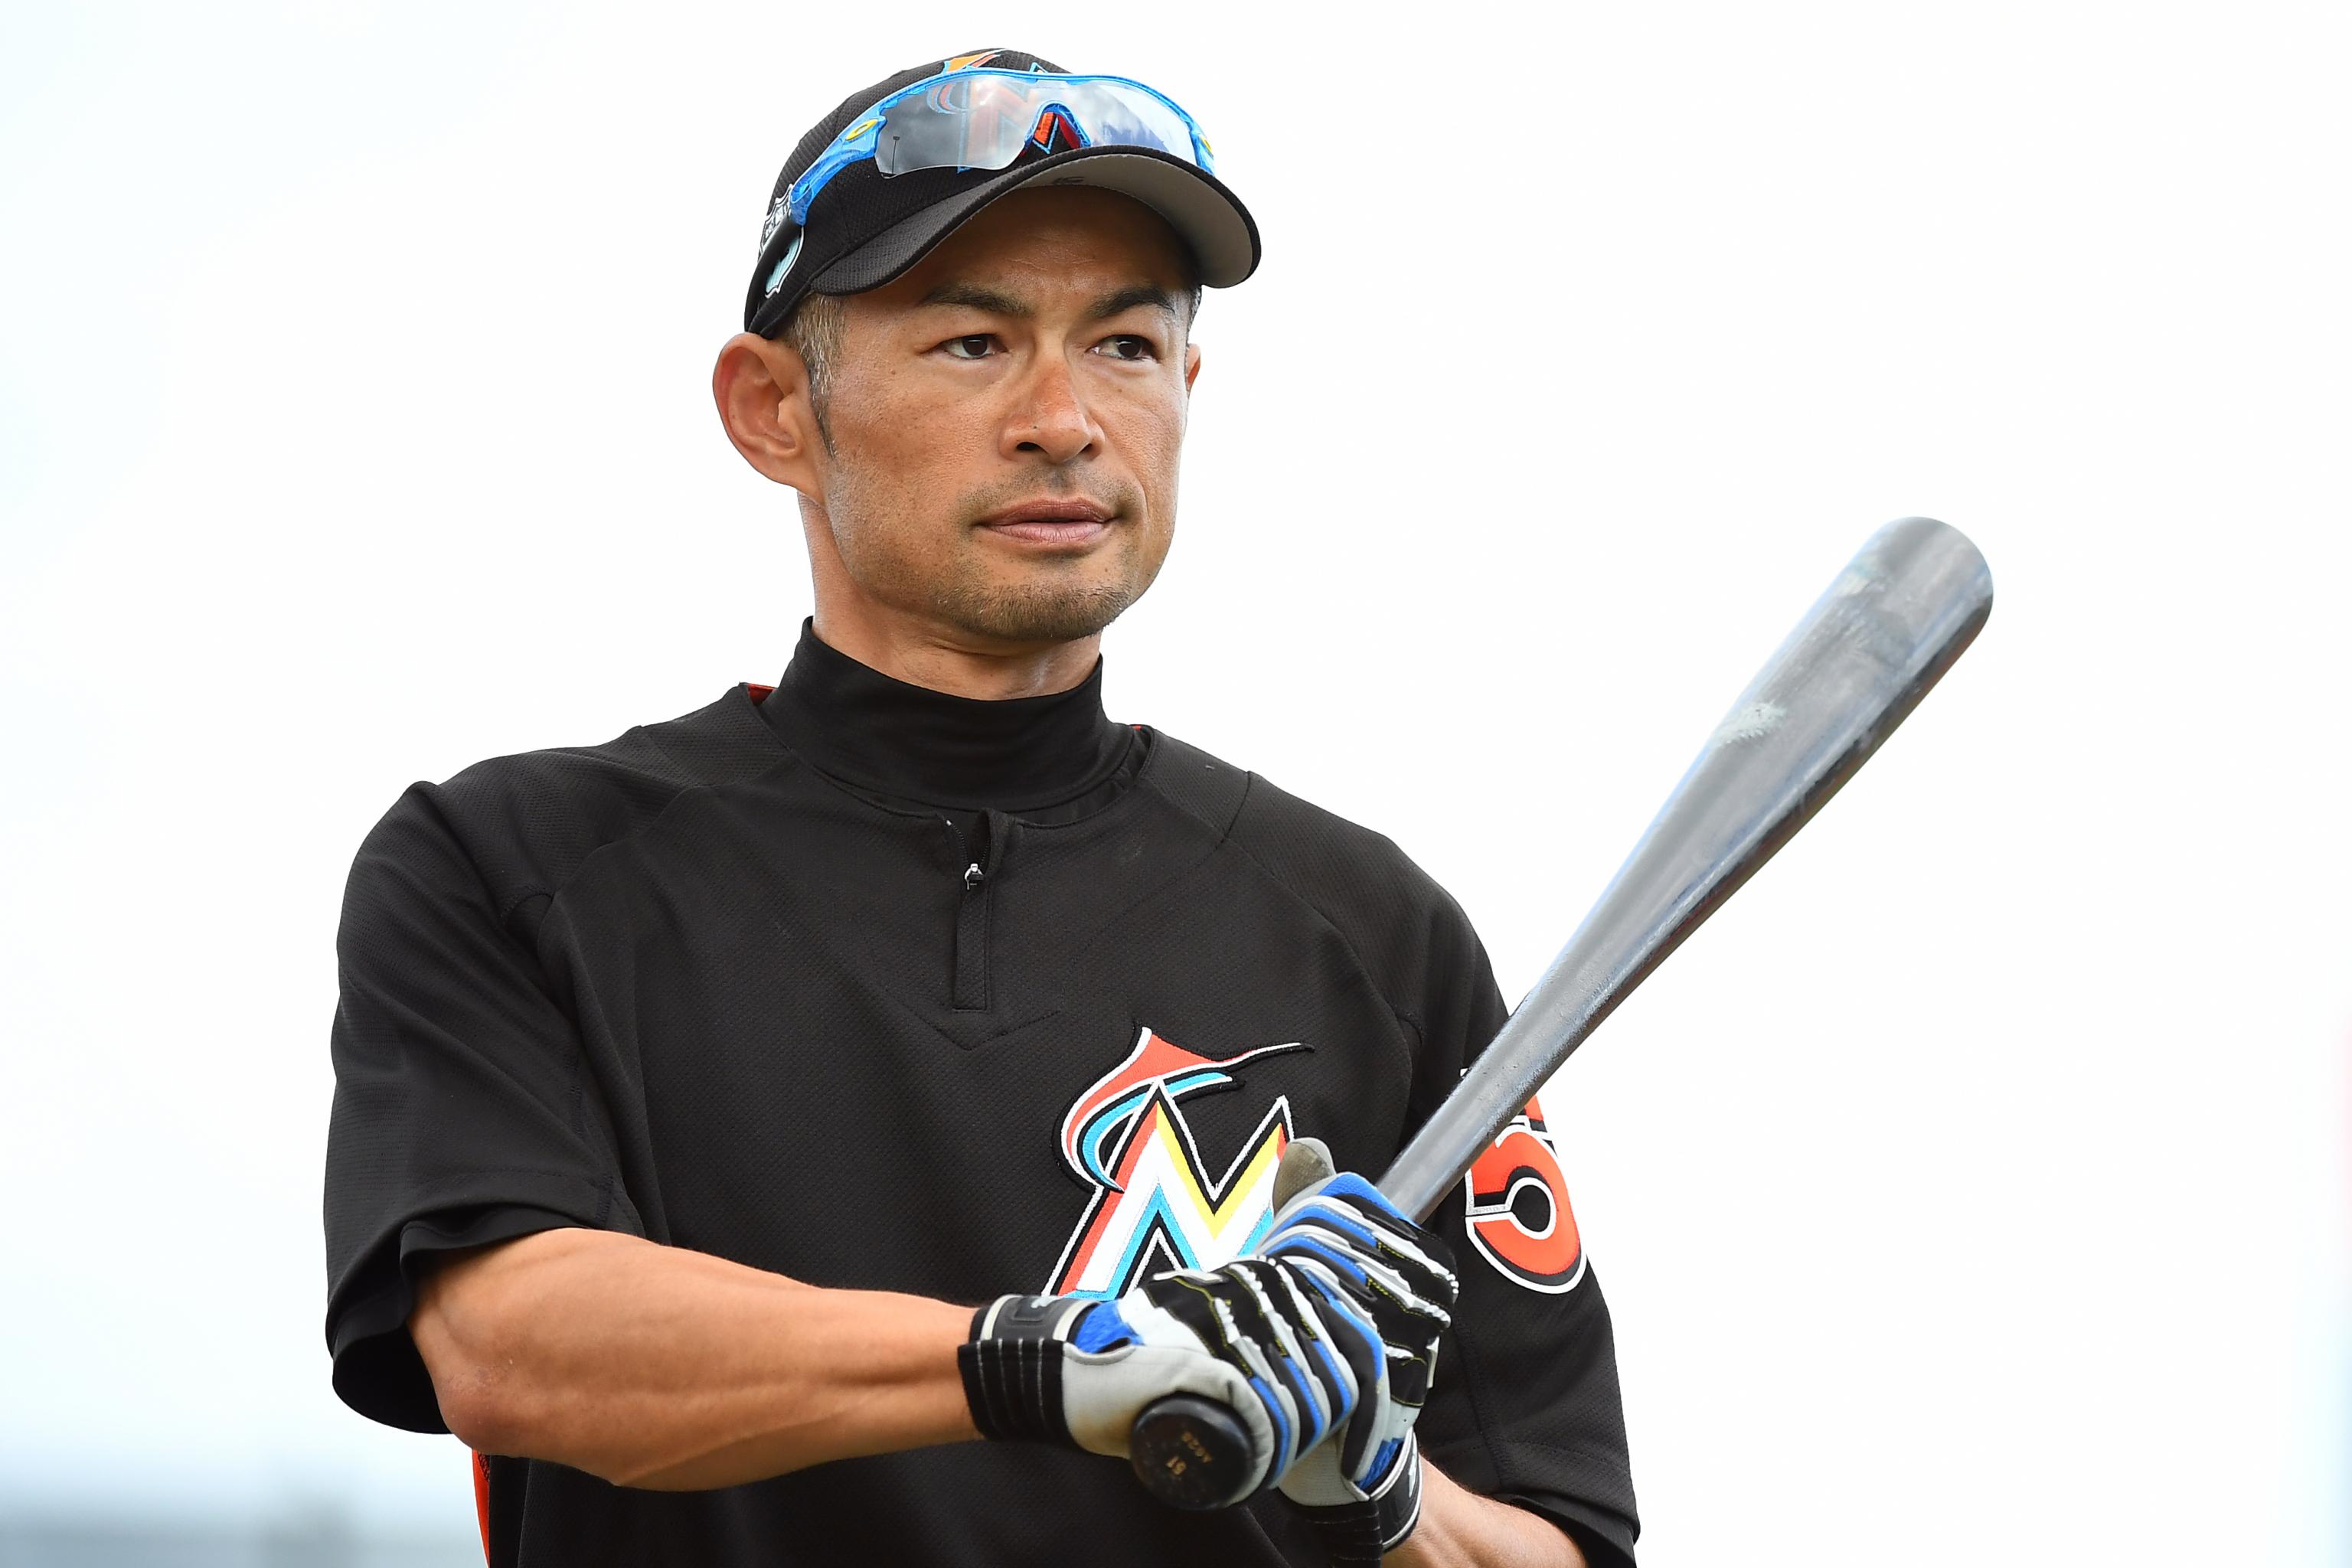 Ichiro Suzuki deflects retirement talk, will continue pregame rituals